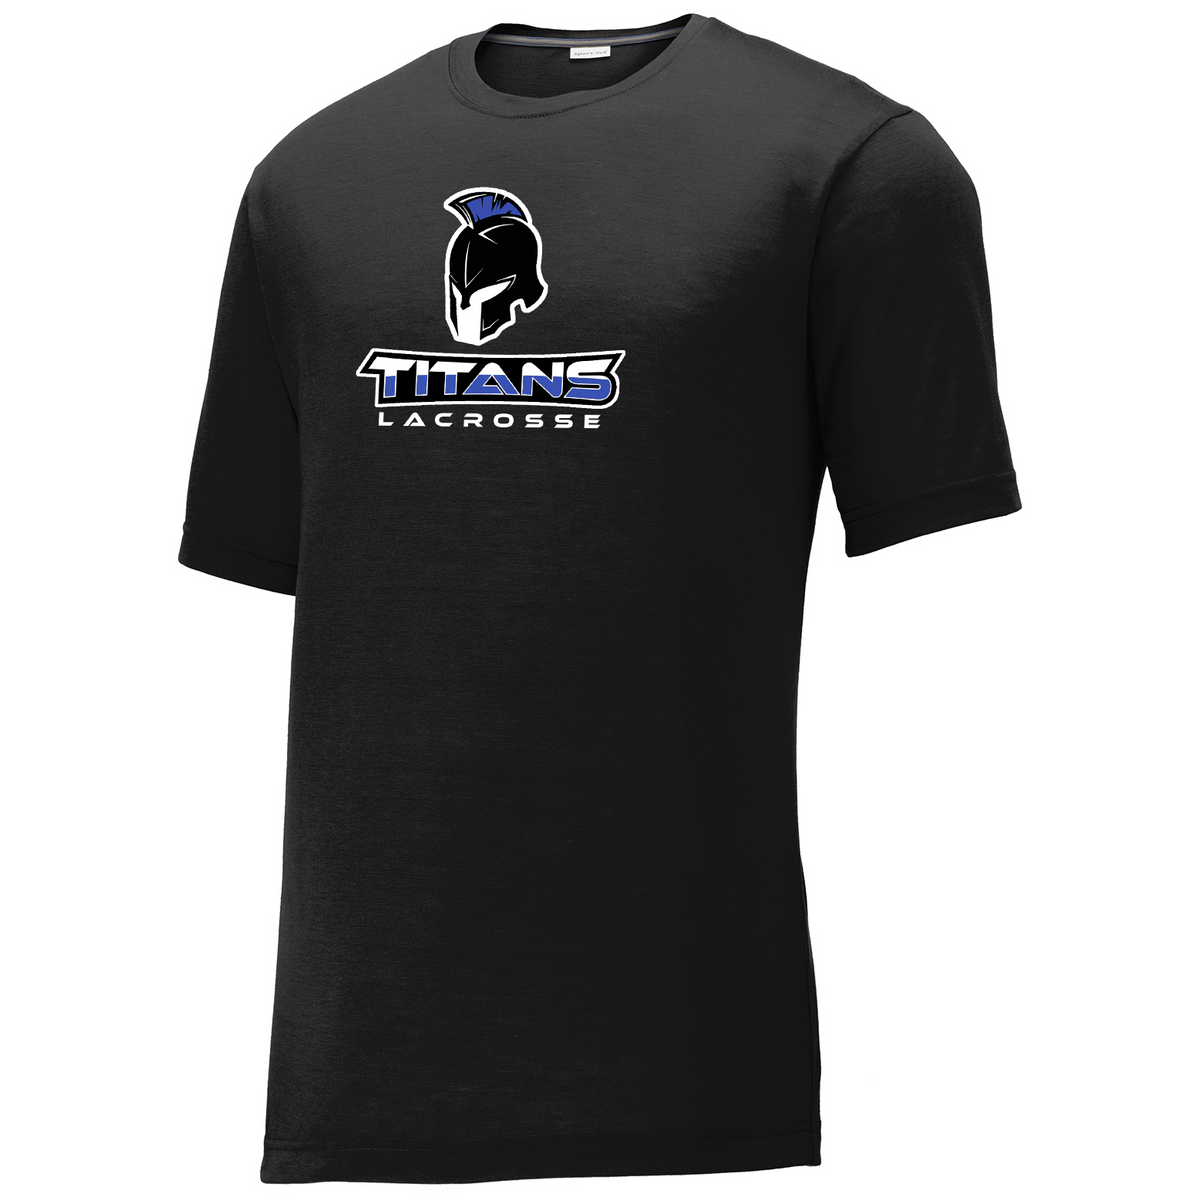 Southwest Titans Lacrosse CottonTouch Performance T-Shirt